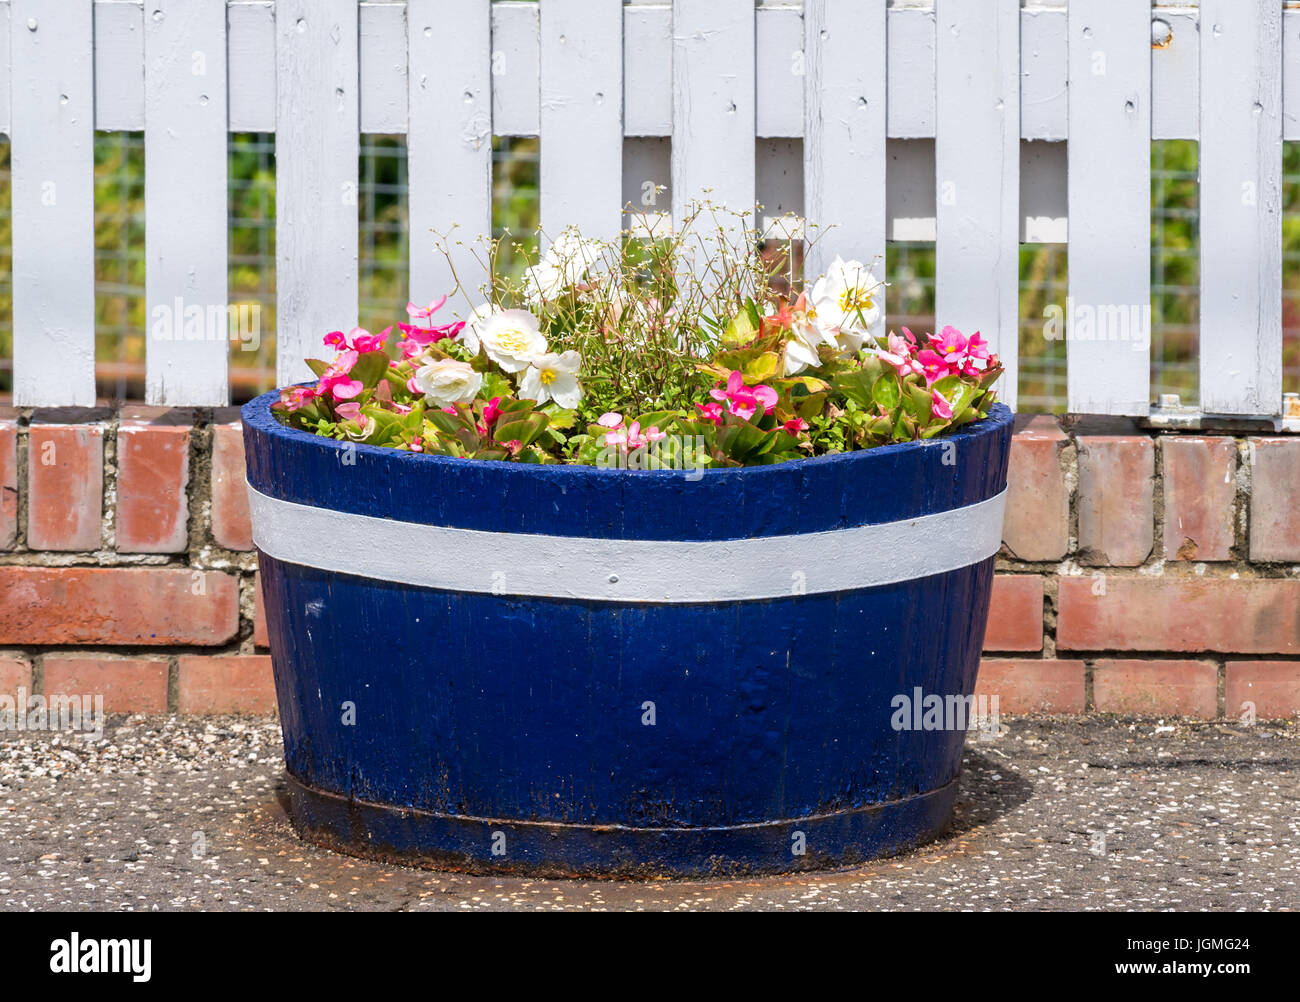 Nahaufnahme der Blüte barrel, Drem Bahnhof Plattform mit Sommerblumen Neben weißen Lattenzaun gefüllt, East Lothian, Schottland, Großbritannien Stockfoto